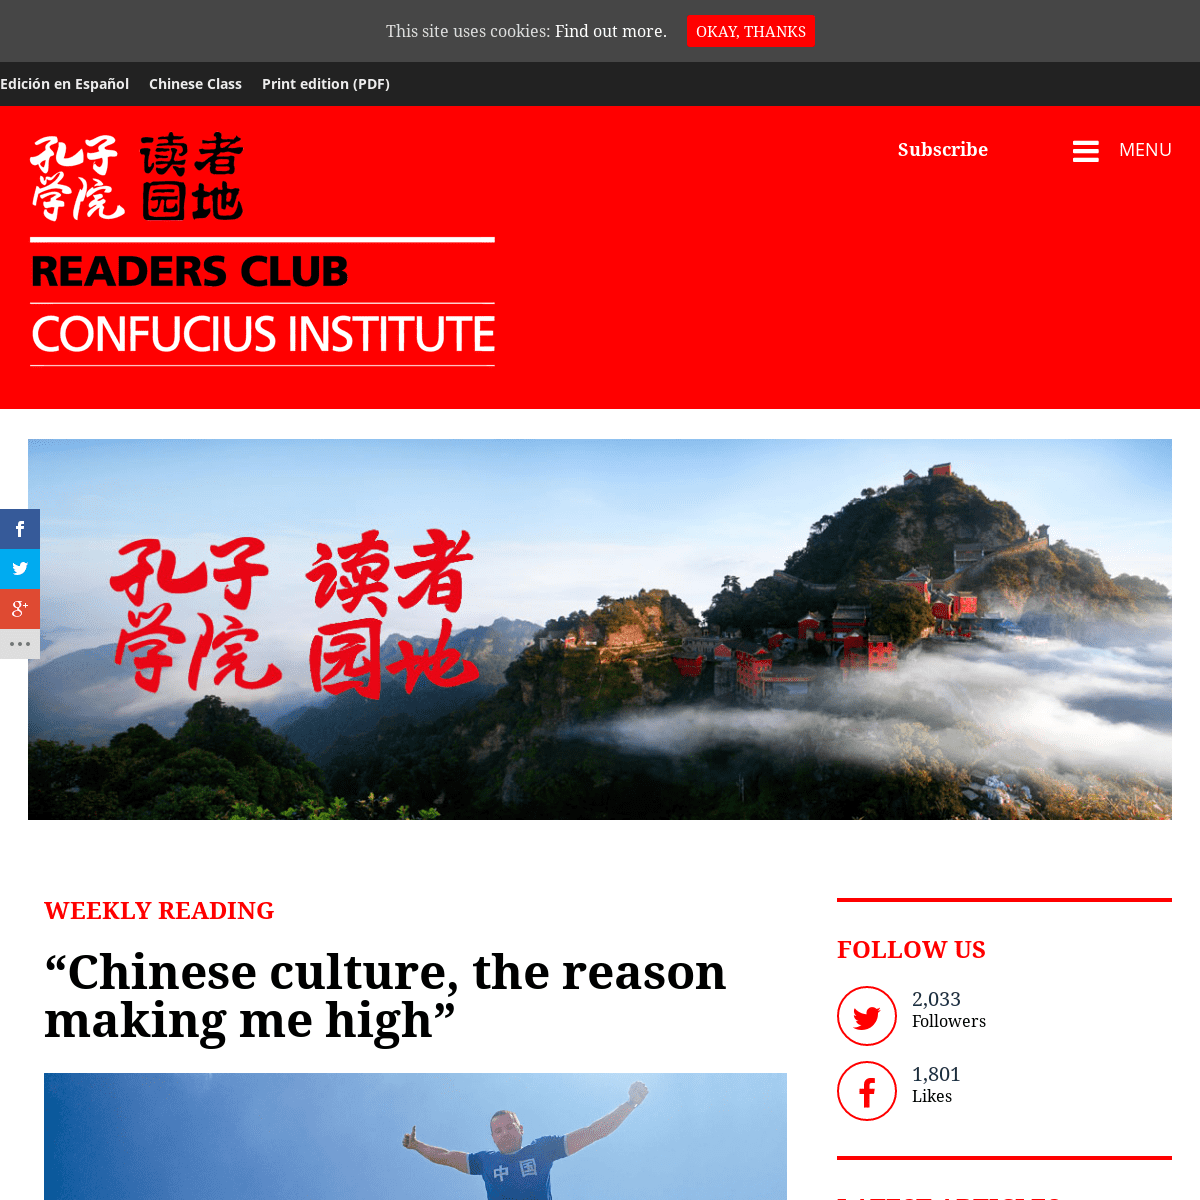 Confucius Institute Magazine - ConfuciusMag